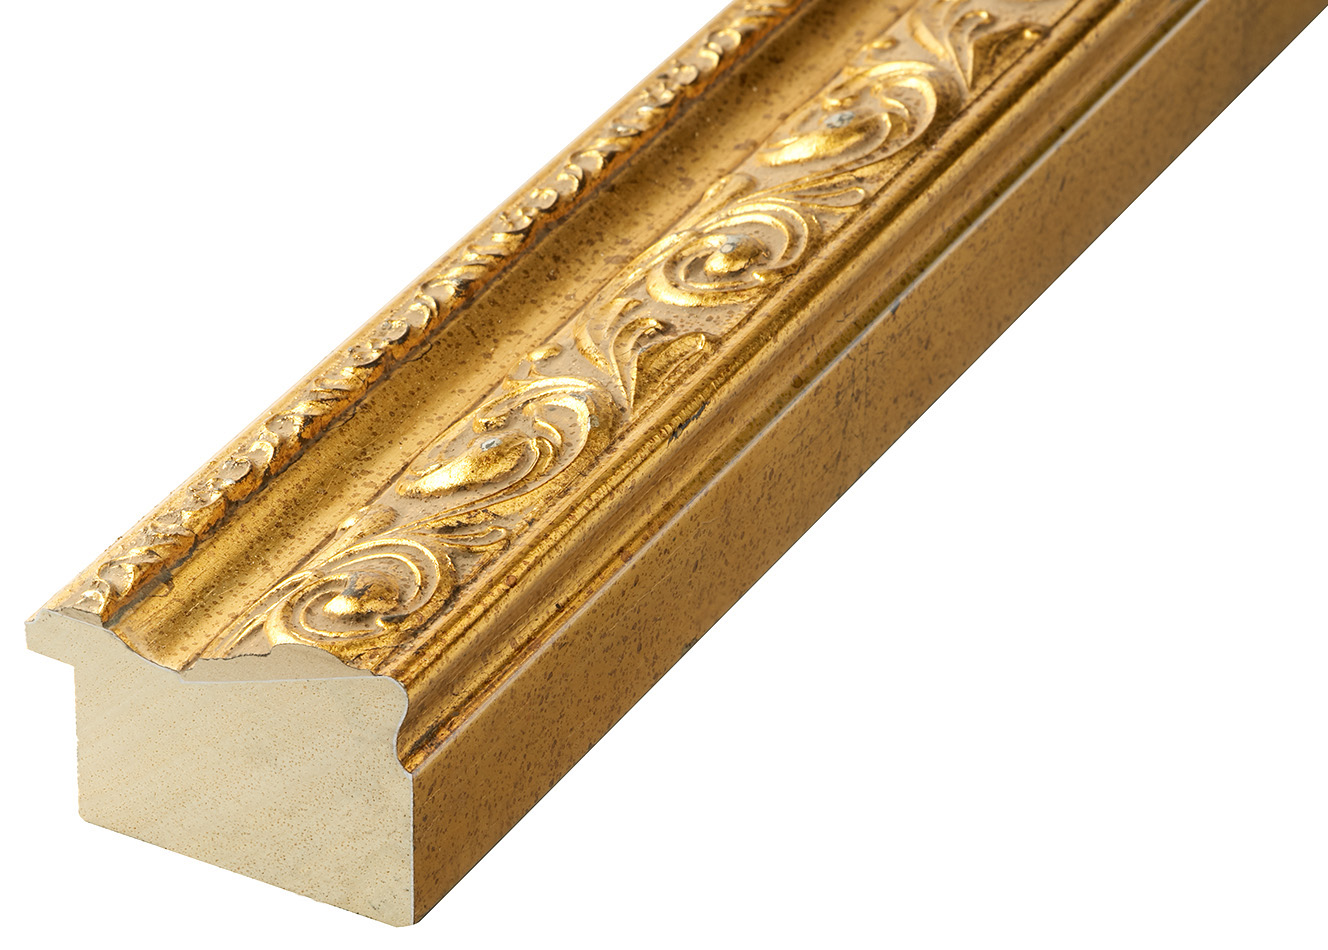 Profil ayous Lăț.64 mm Înălț.44 - auriu, decorațiuni în relief